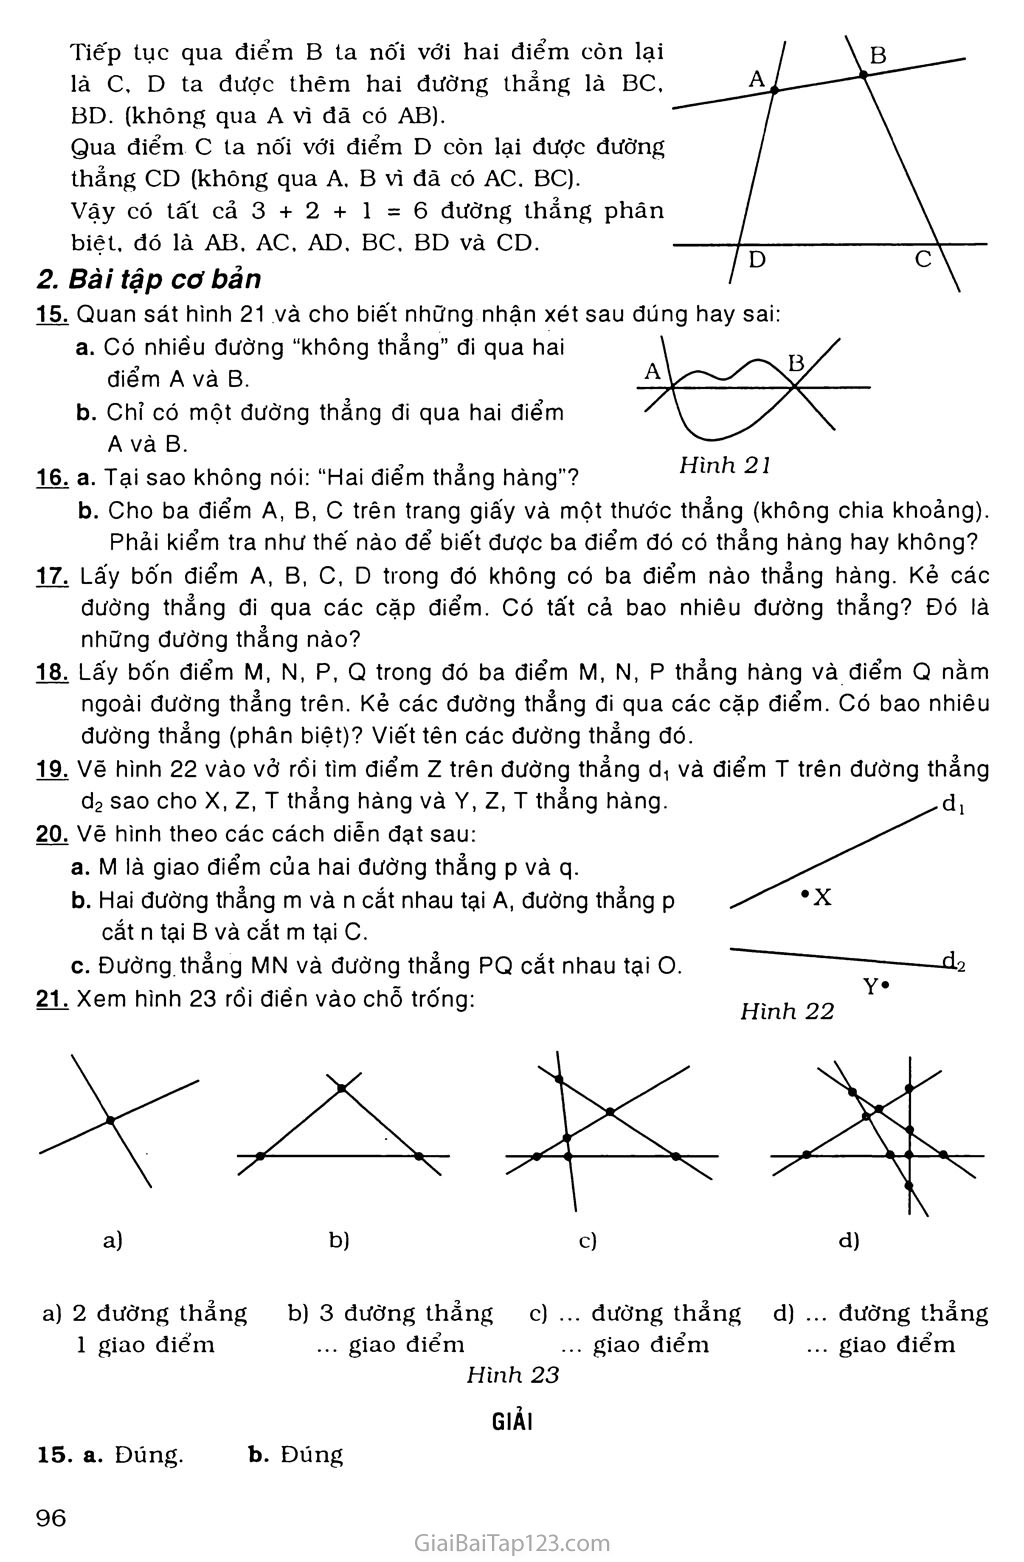 Bài 3. Đường thẳng đi qua hai điểm trang 2